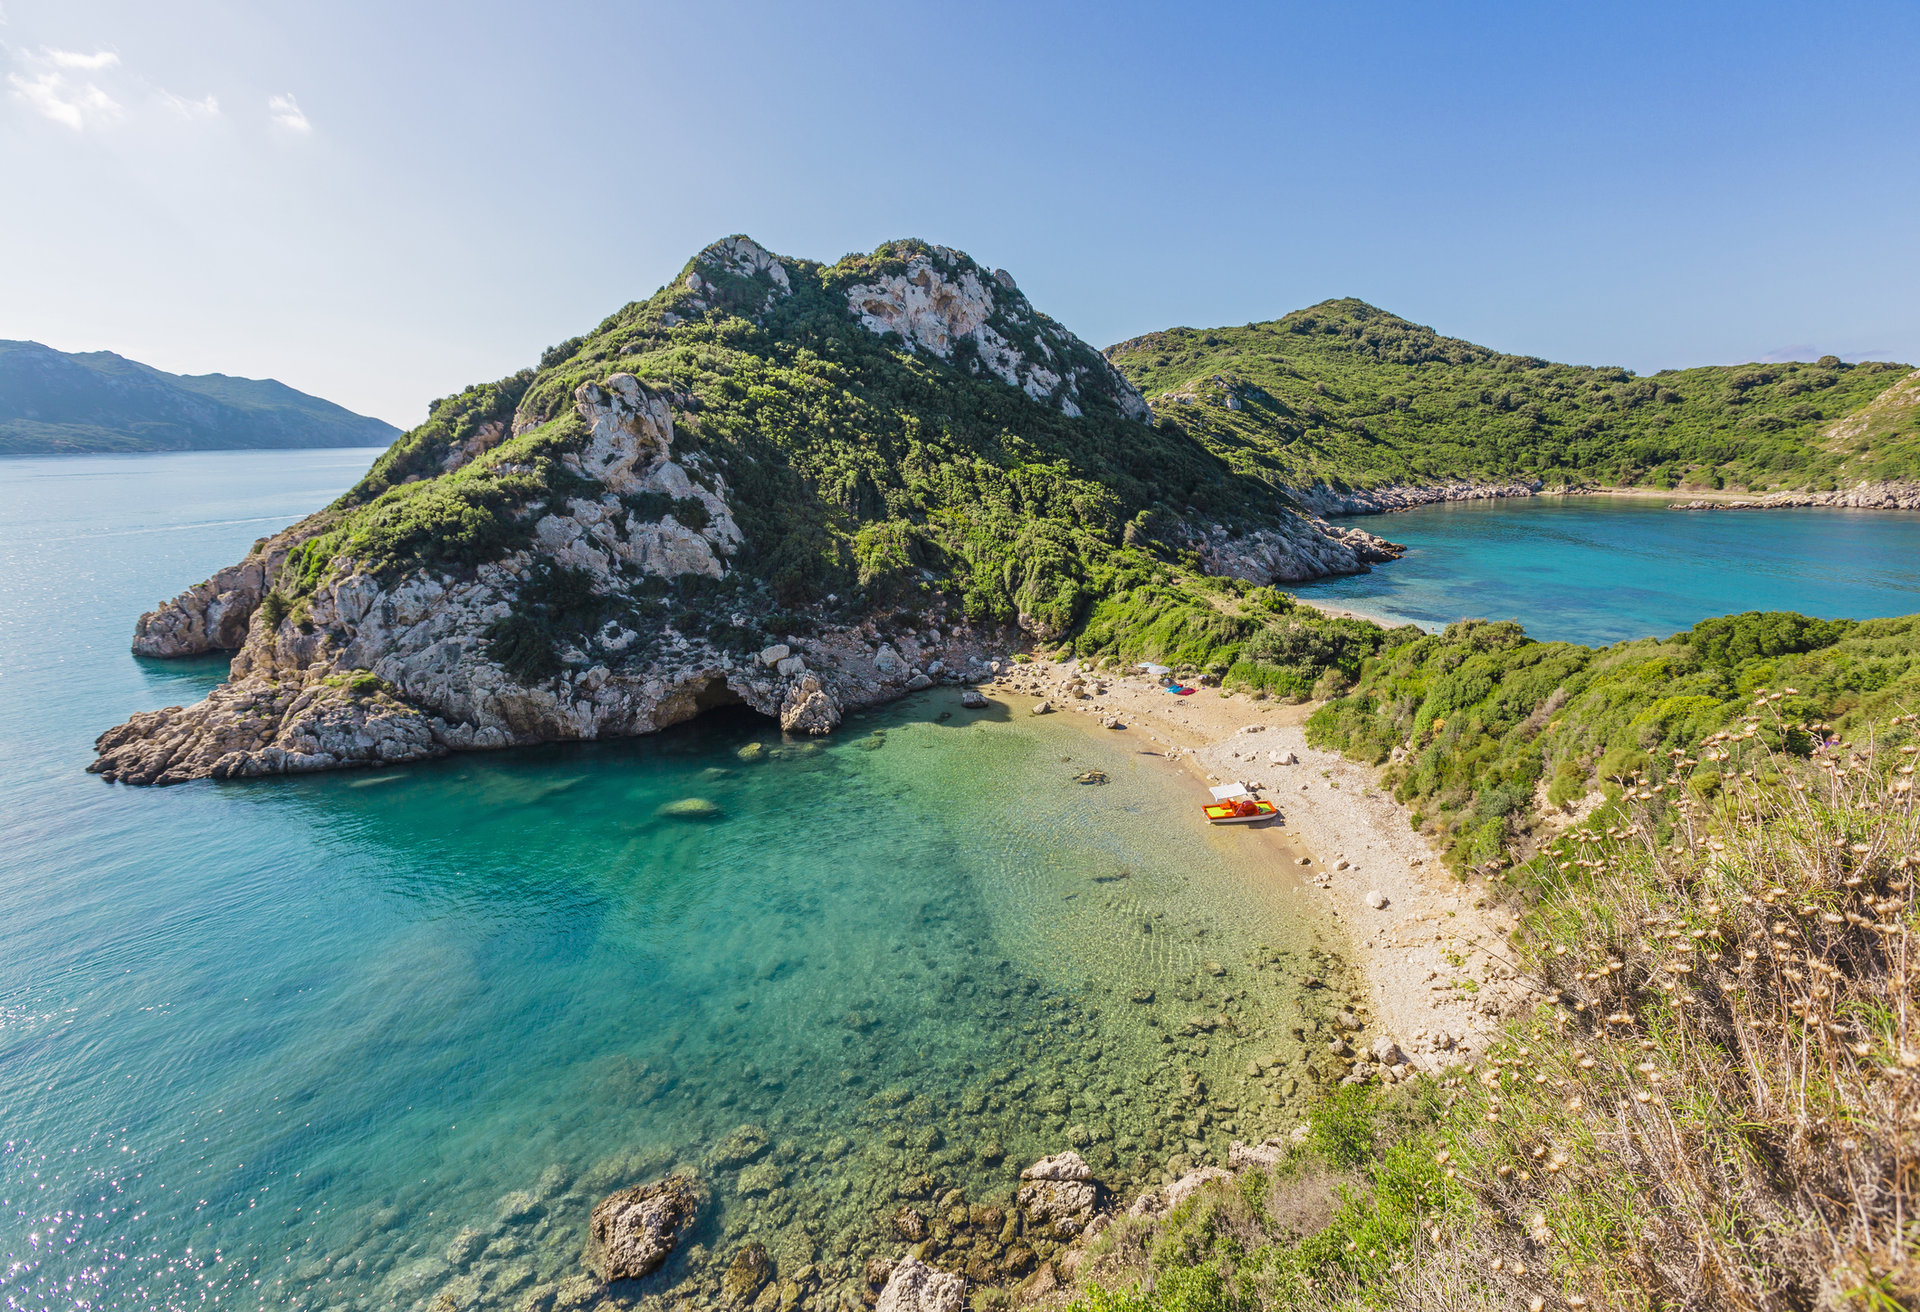 Prepare-se para a estonteante paisagem da lha de Corfu, considerada Patrimônio Mundial pela UNESCO